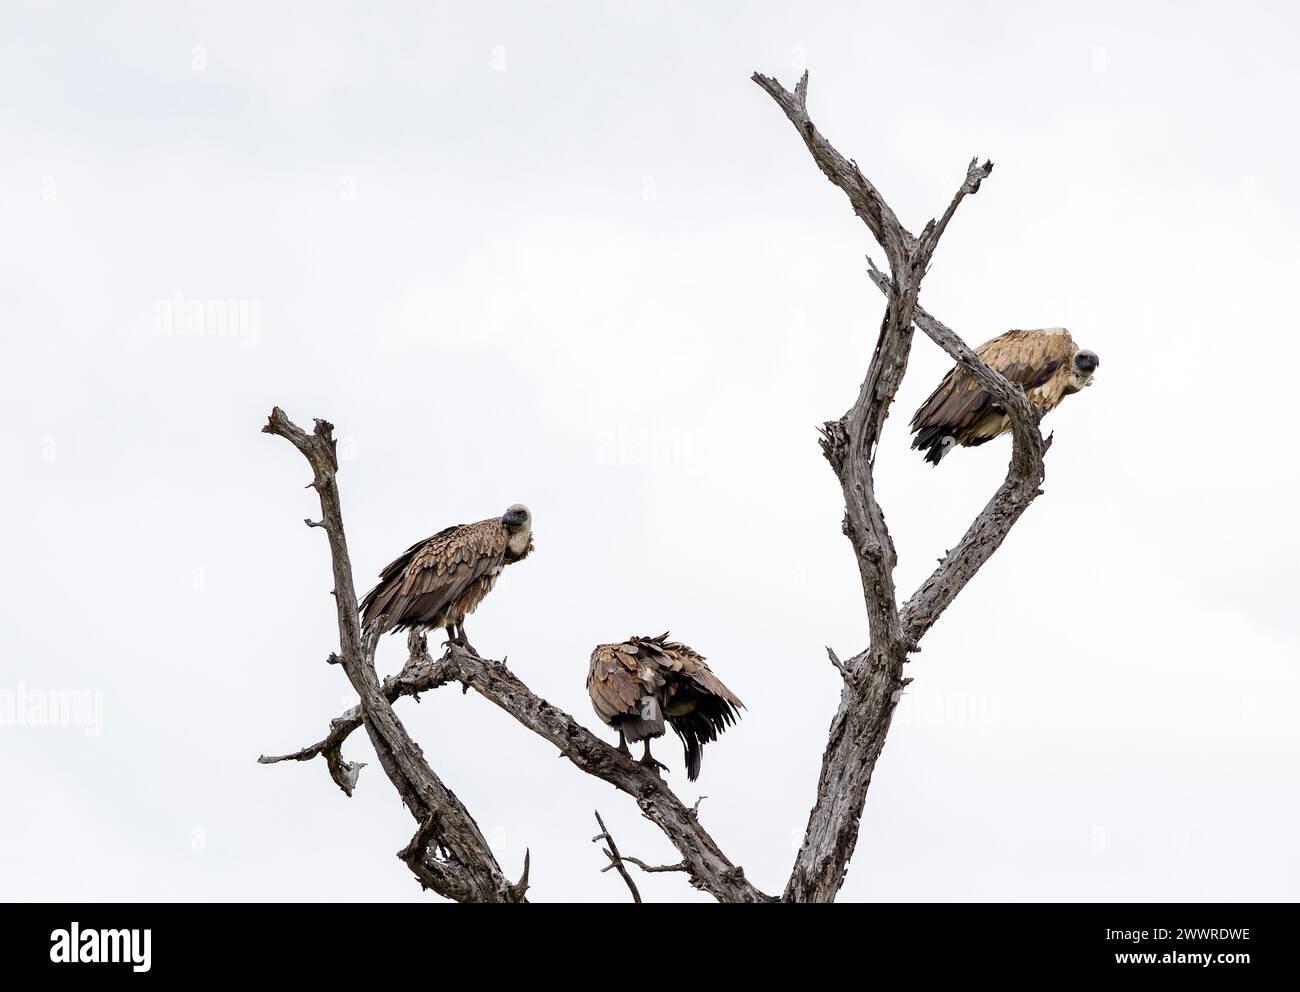 Trois 3 oiseaux vautours africain à dos blanc sur branche sèche sur fond de ciel blanc. Parc national Kruger, Afrique du Sud. Mur d'oiseaux pour animaux sauvages Banque D'Images